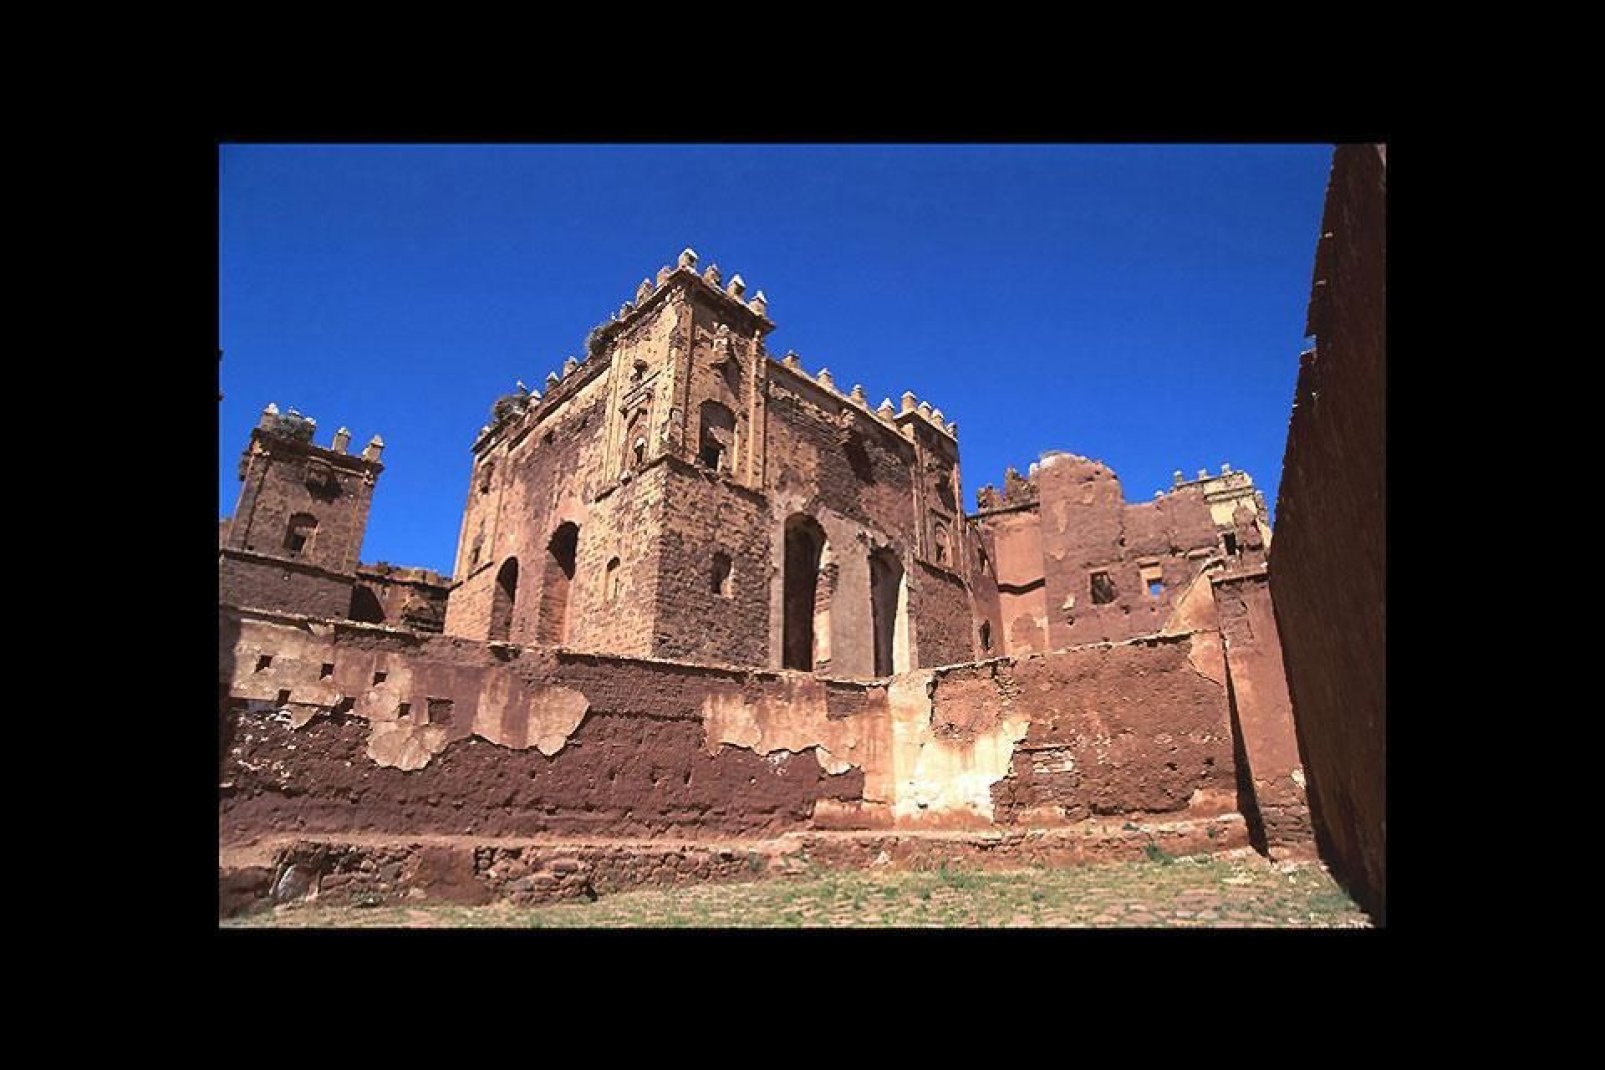 Esta casba, situada en Telouet, es la antigua residencia del pachá de Marrakech. Un monumento muy recomendado.